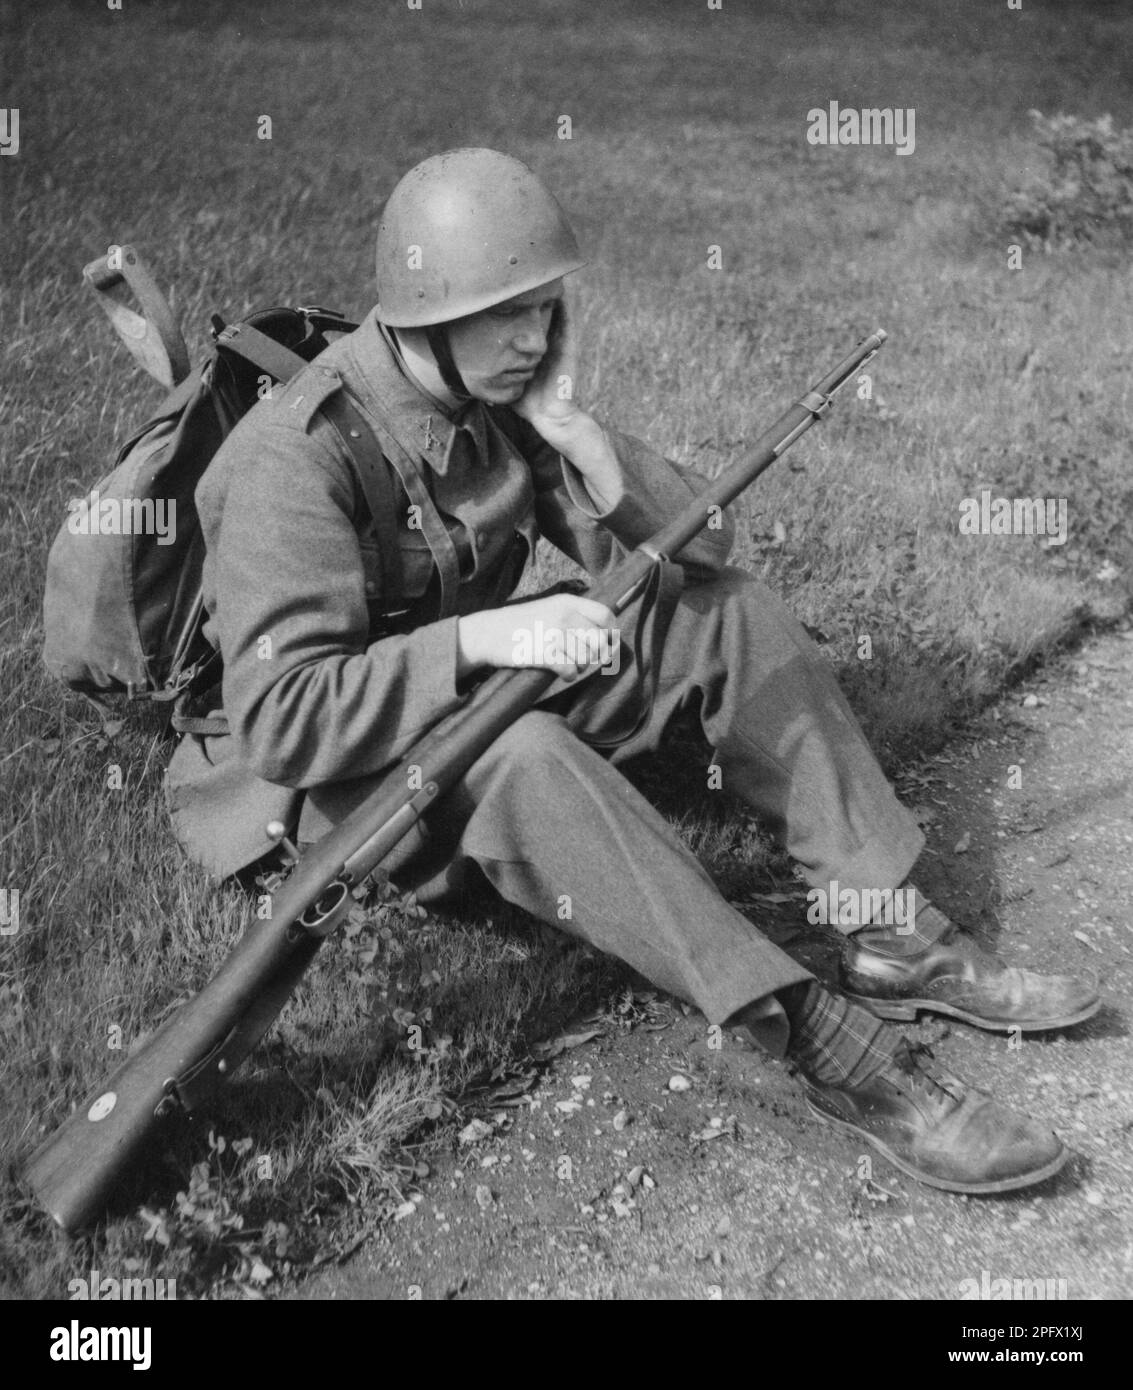 Soldat in den 1940er. Ein Mann in Uniform, Gewehr und Paket sieht müde aus, wenn er auf dem Boden sitzt und seinen Kopf auf seinem Arm ruht. Schweden 1942 Stockfoto